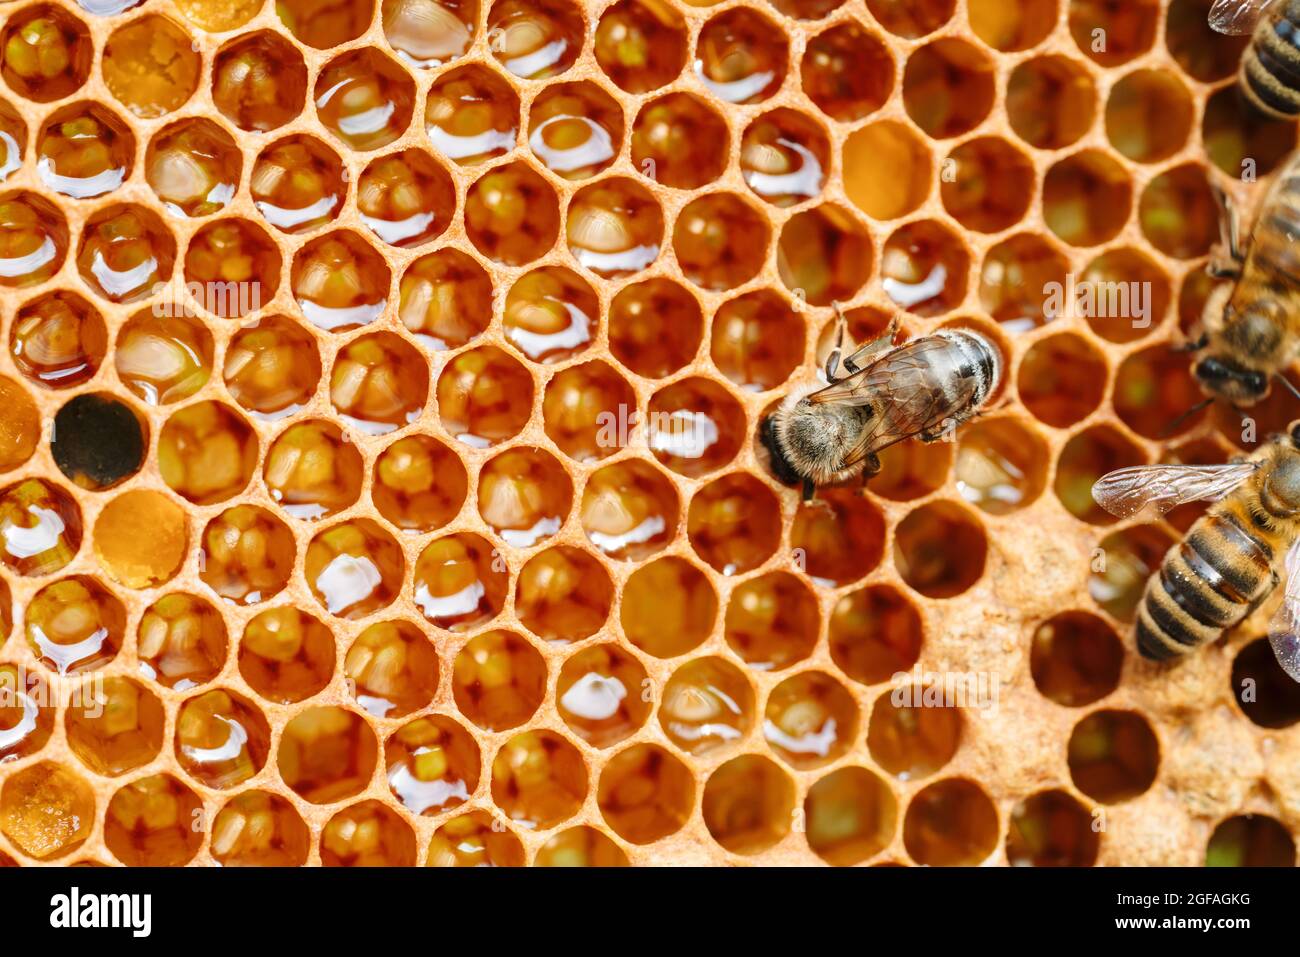 Macro foto di api da lavoro su nidi d'ape. Immagine dell'apicoltura e della produzione del miele Foto Stock